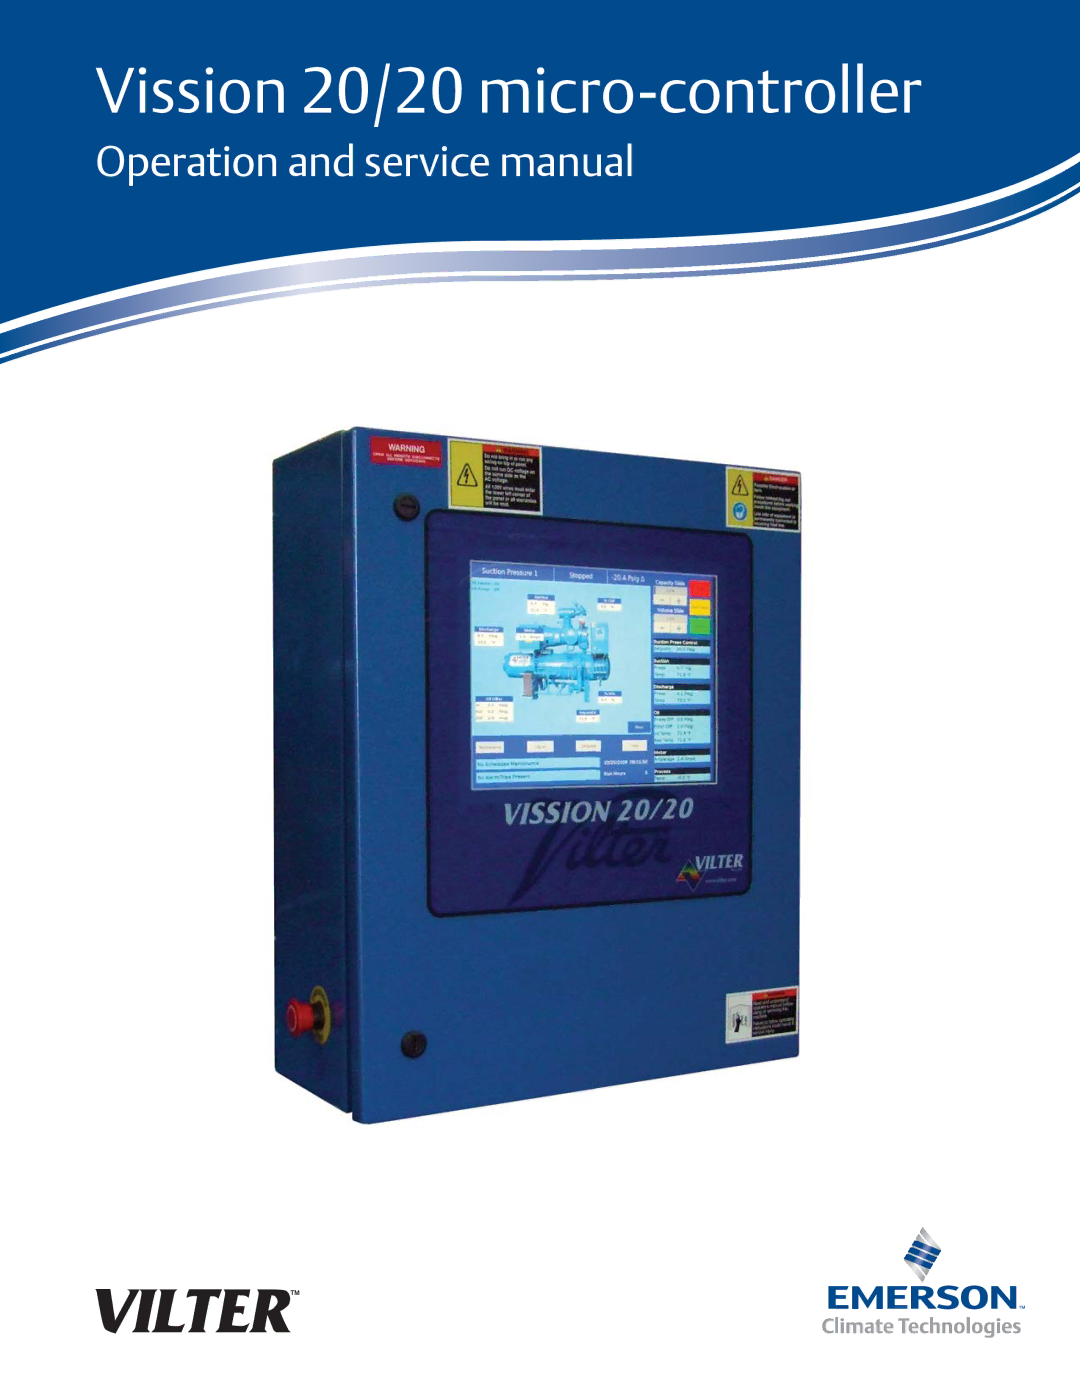 Emerson service manual Vission 20/20 micro-controller 